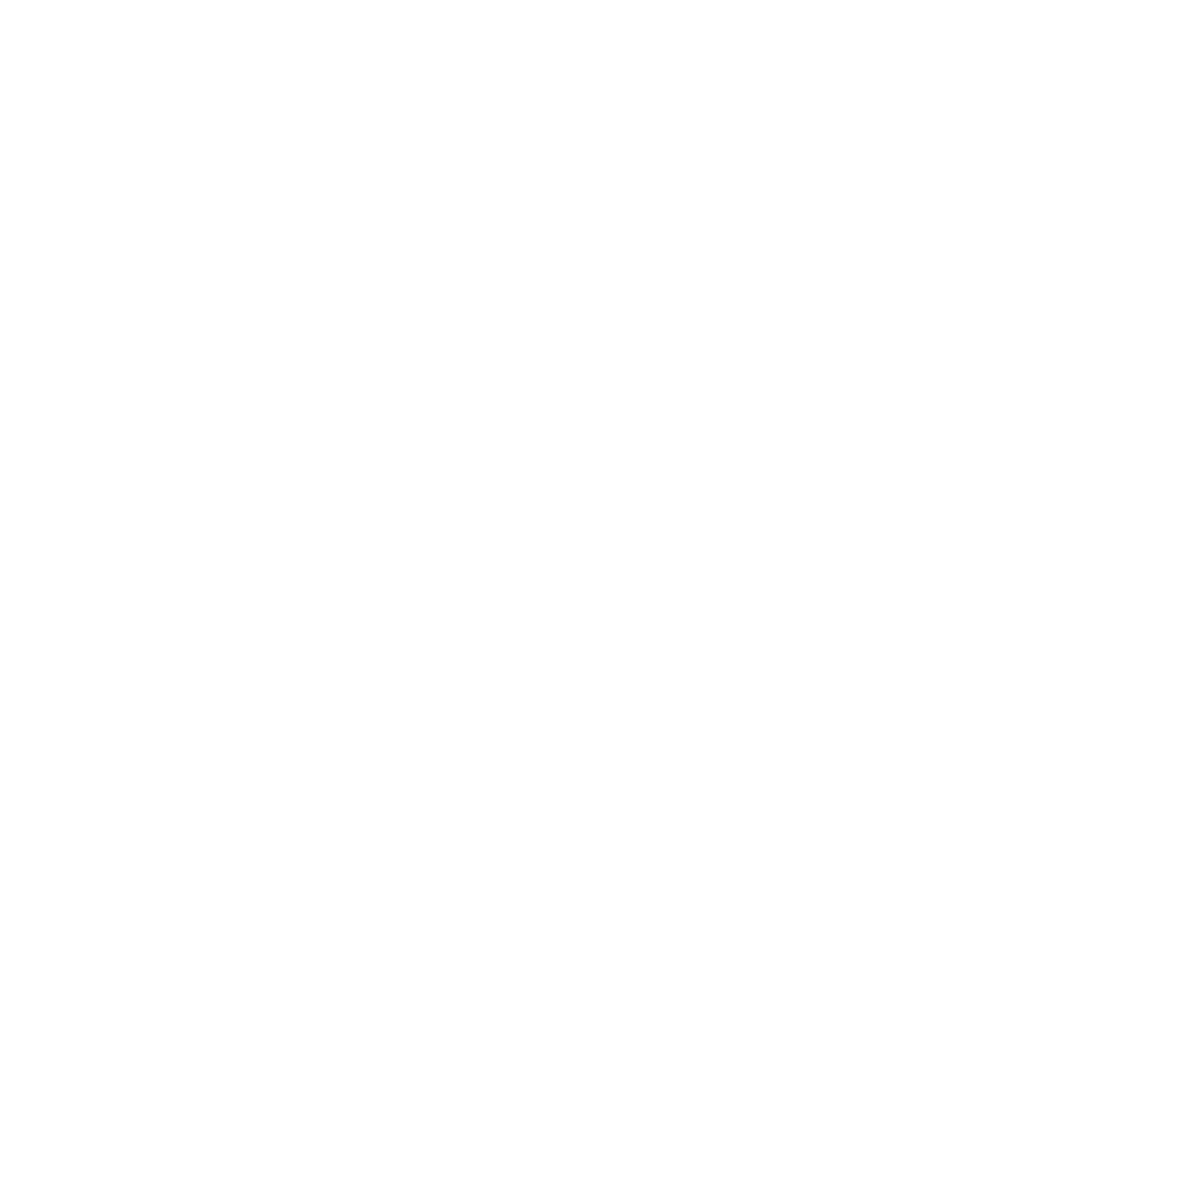 Eliane Milan - Senior Art Director